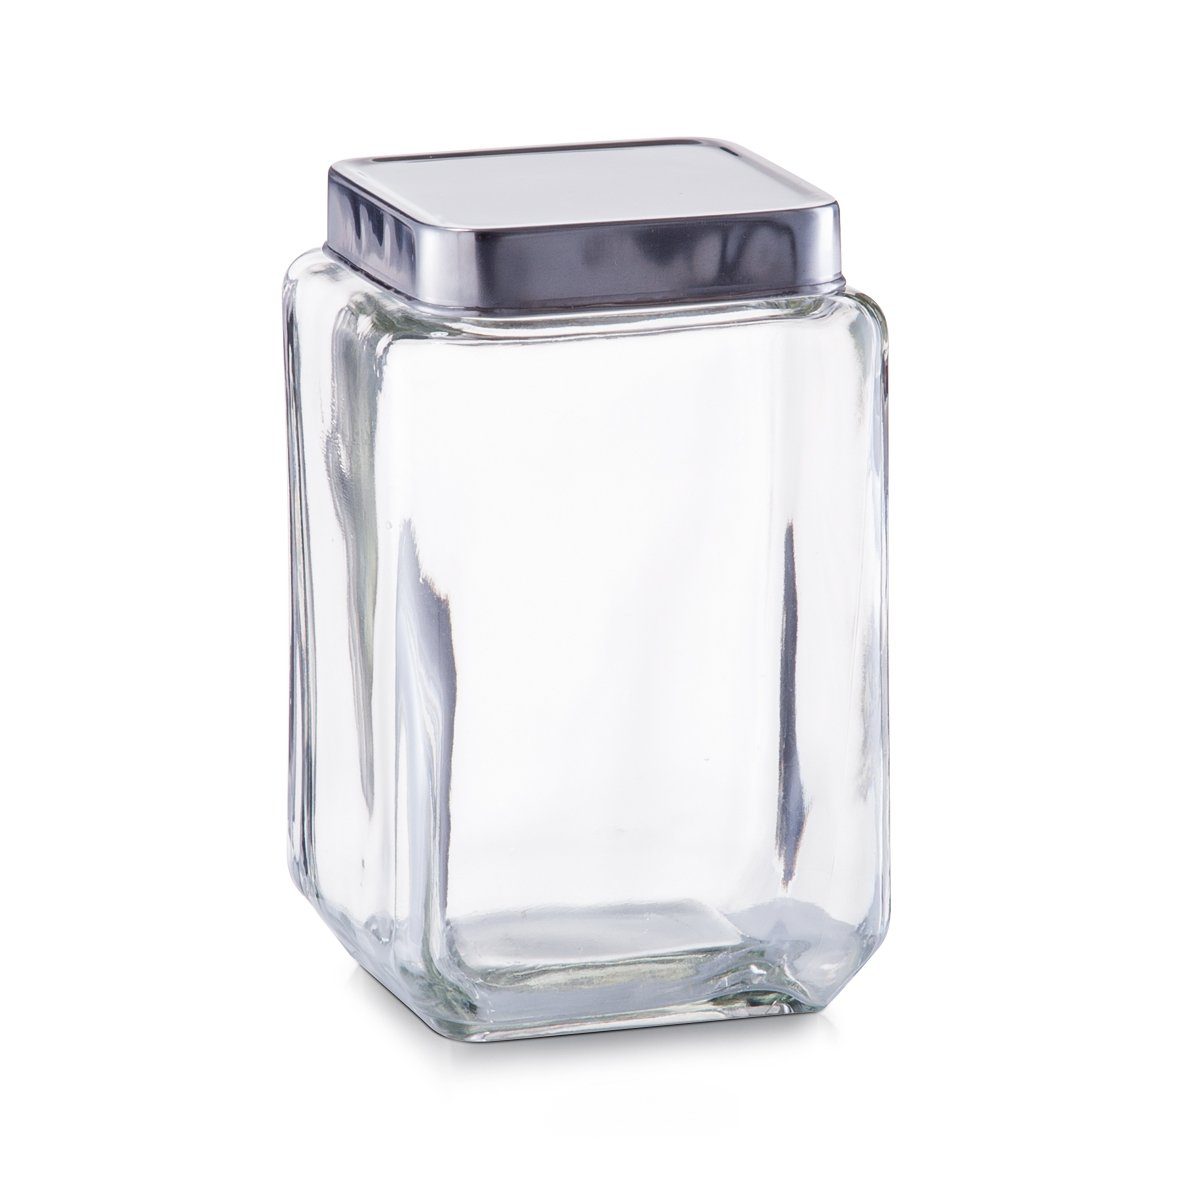 Zeller Present Vorratsglas Vorratsglas m. Edelstahldeckel, Glas/Edelstahl  18/0, 1500 ml, Glas/Edelstahl 18/0, transparent, 11 x 11 x 18 cm, aus Glas  und hochwertigem Edelstahl gefertigt